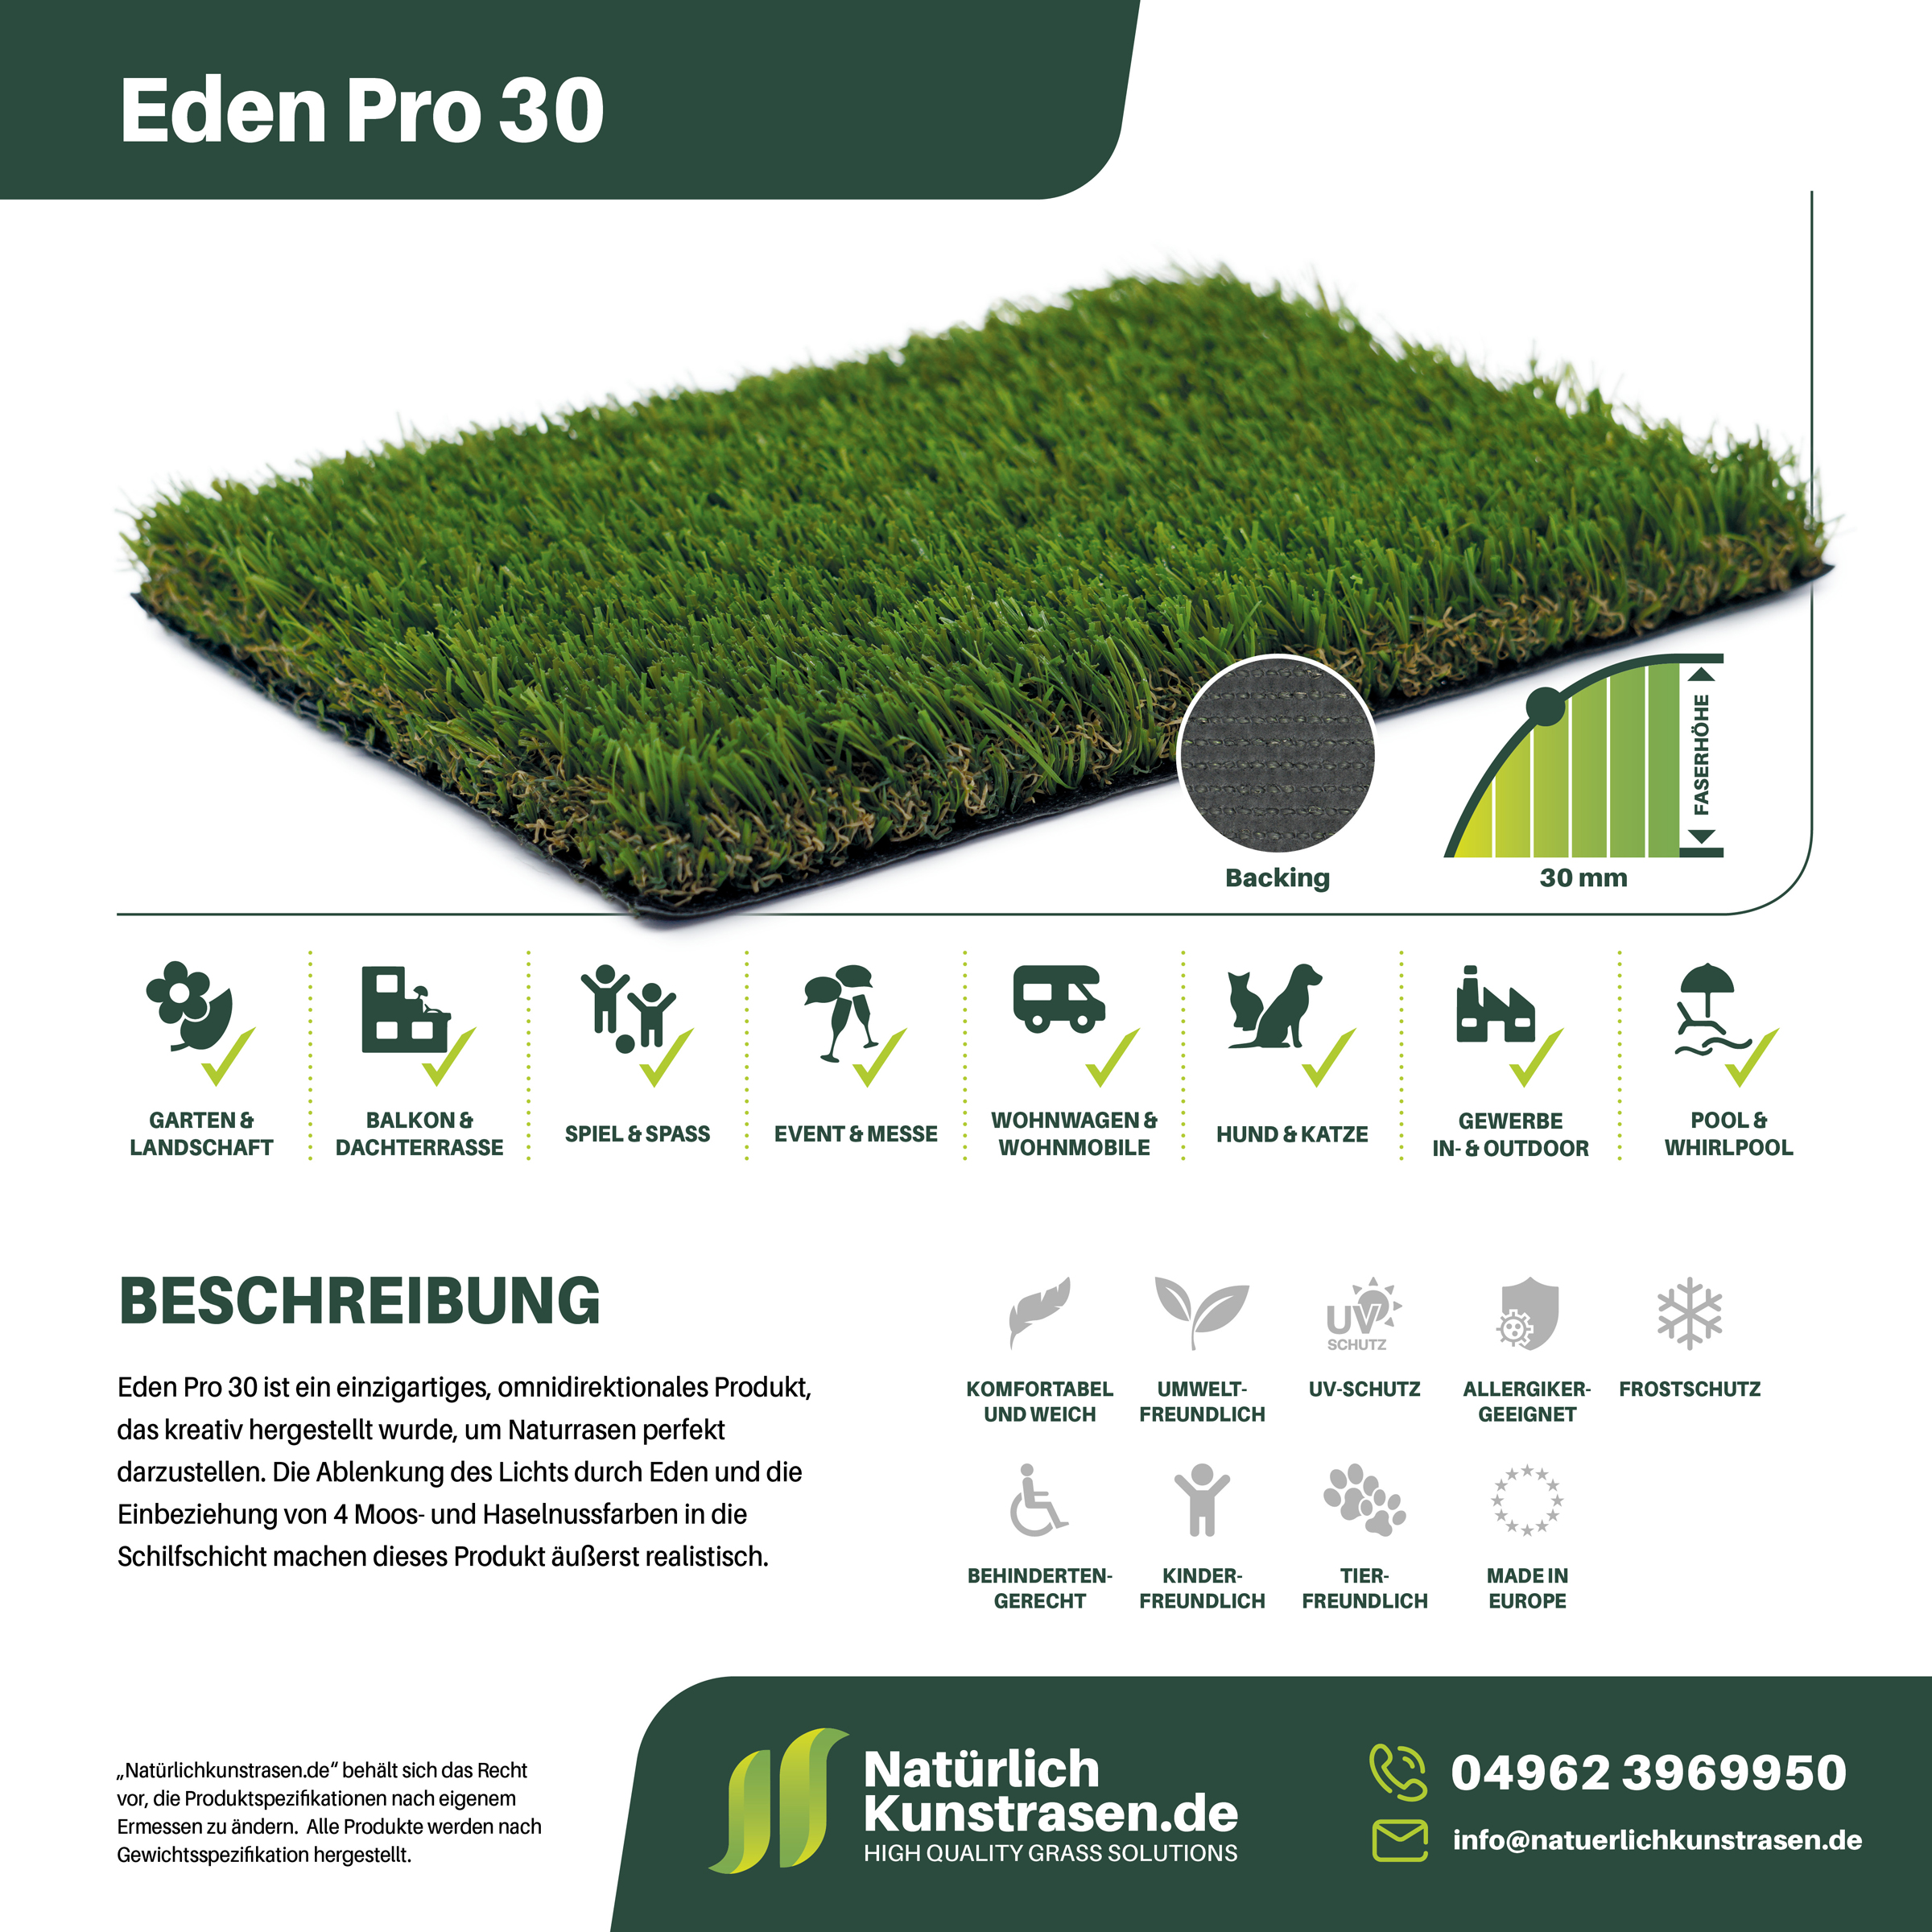 Kunstrasen-Produkte+Anwendungsgebiete+Name-Eden-Pro-30.jpg